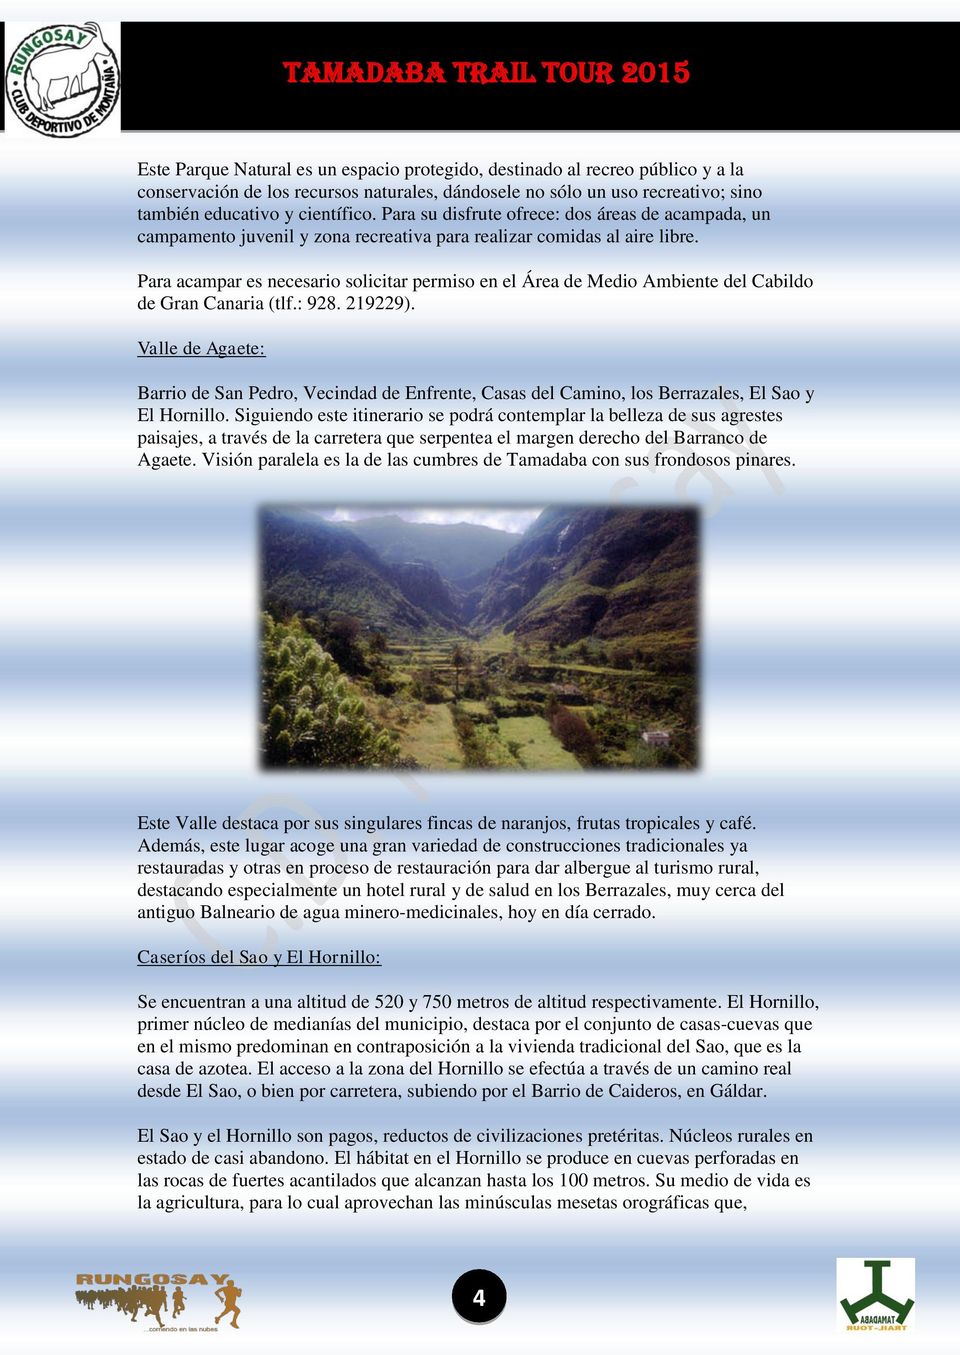 Para acampar es necesario solicitar permiso en el Área de Medio Ambiente del Cabildo de Gran Canaria (tlf.: 928. 219229).